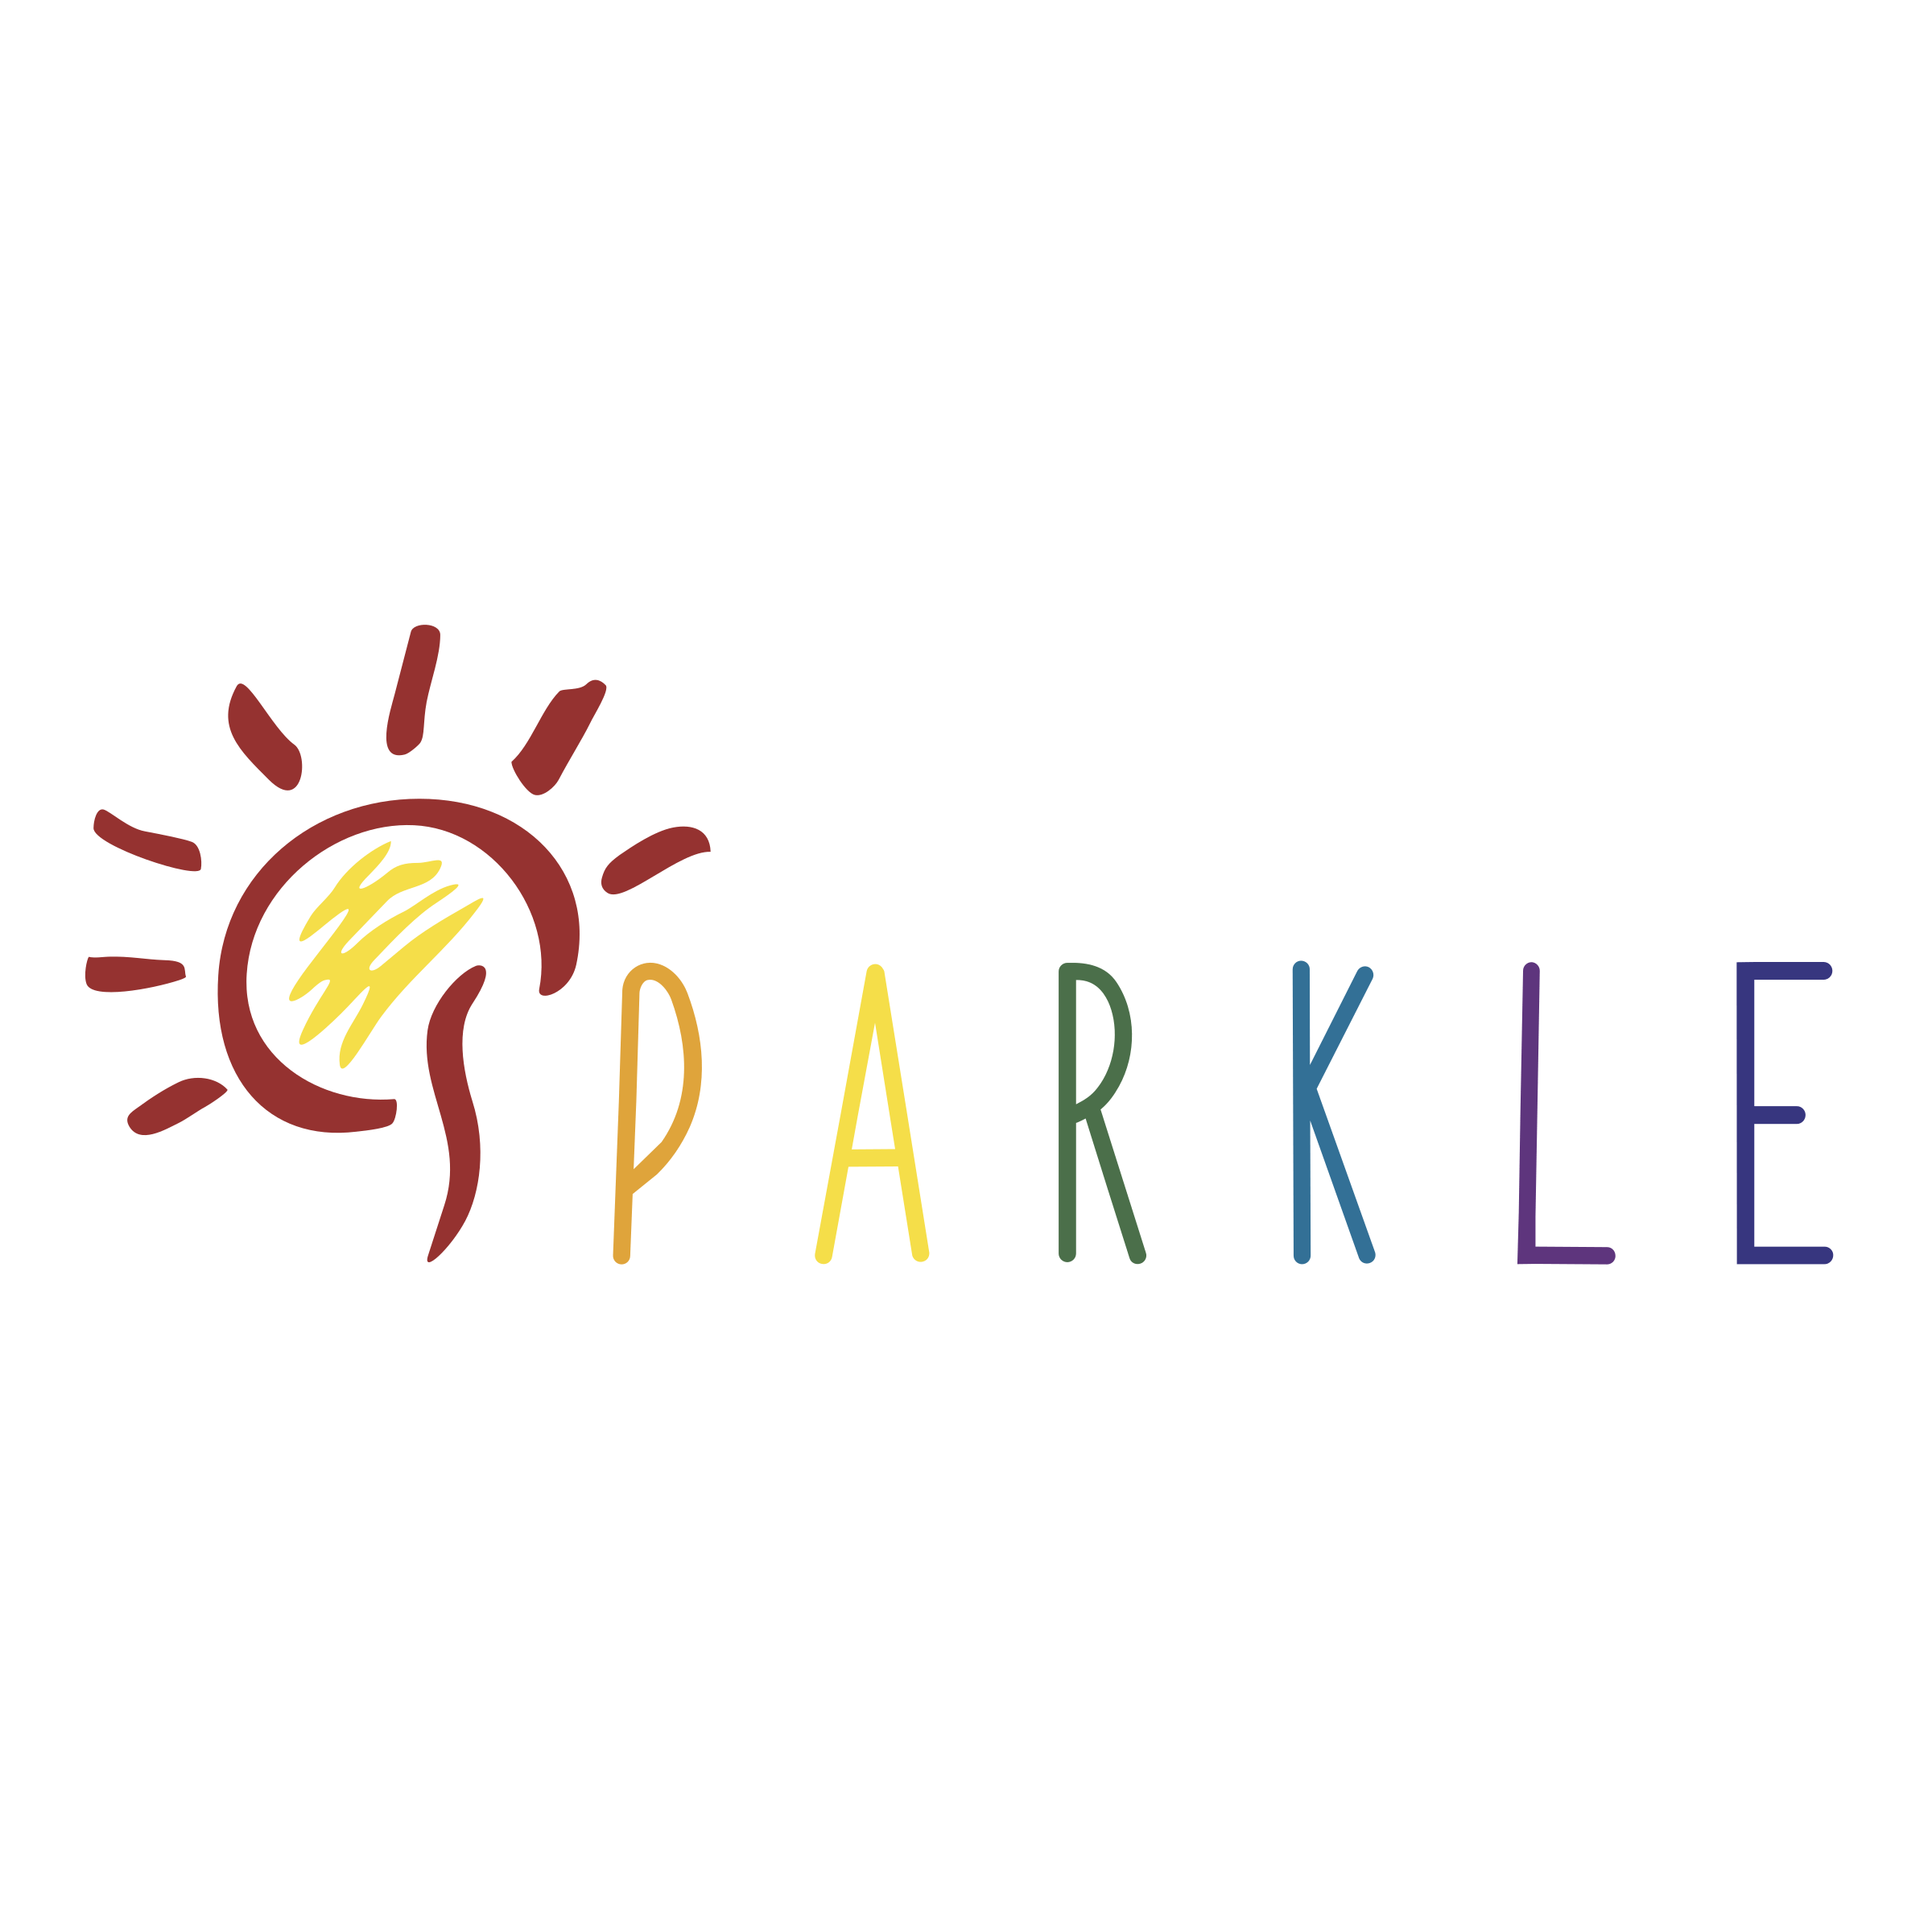 Sparkle Logo - Sparkle Logo PNG Transparent & SVG Vector - Freebie Supply